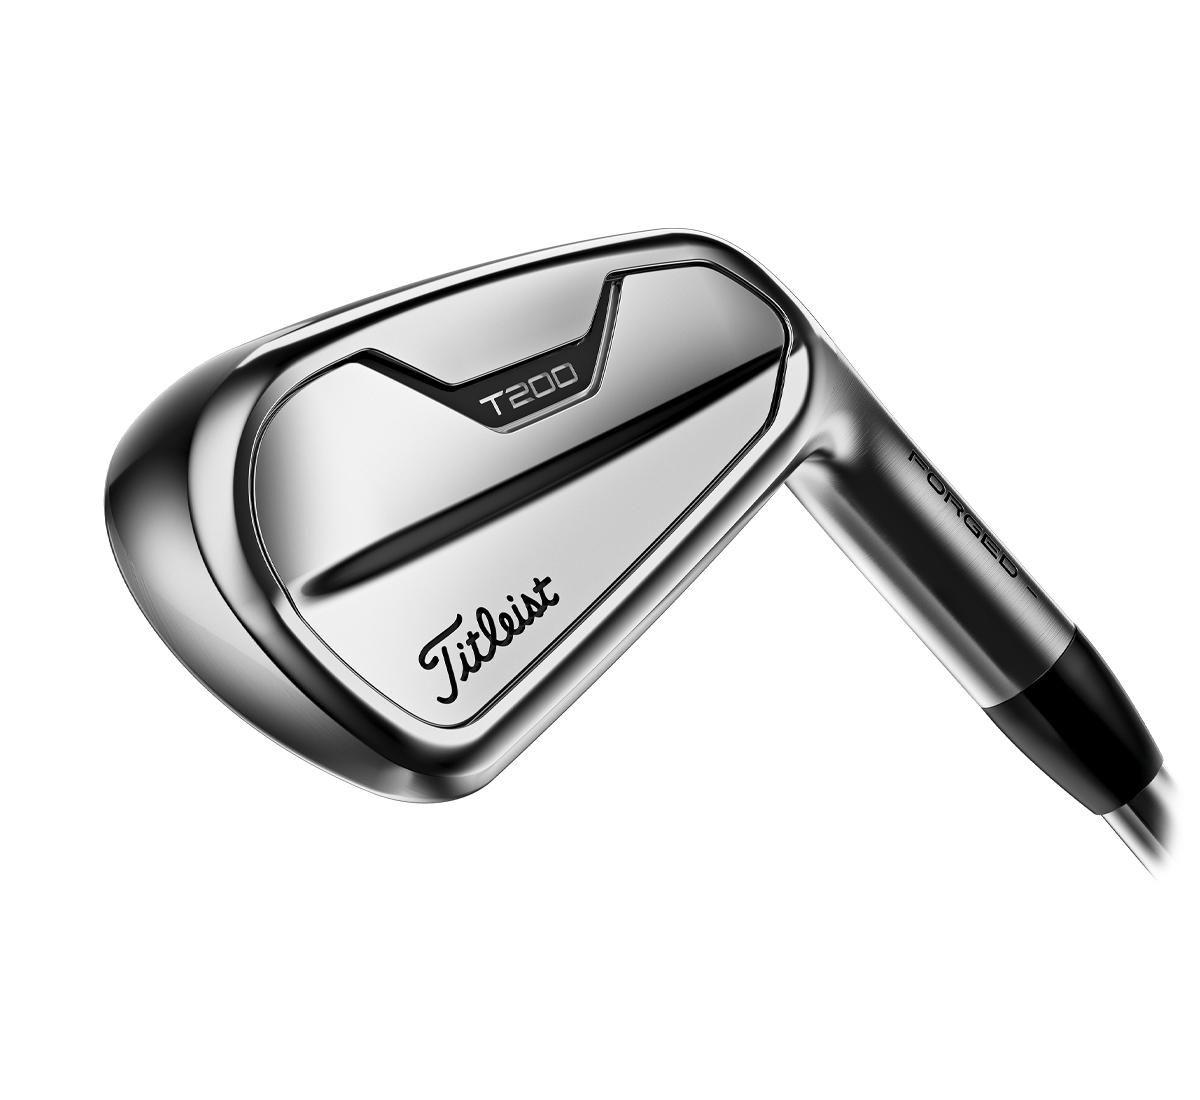 T-Series T200 Irons | Golf Distance Irons | Titleist